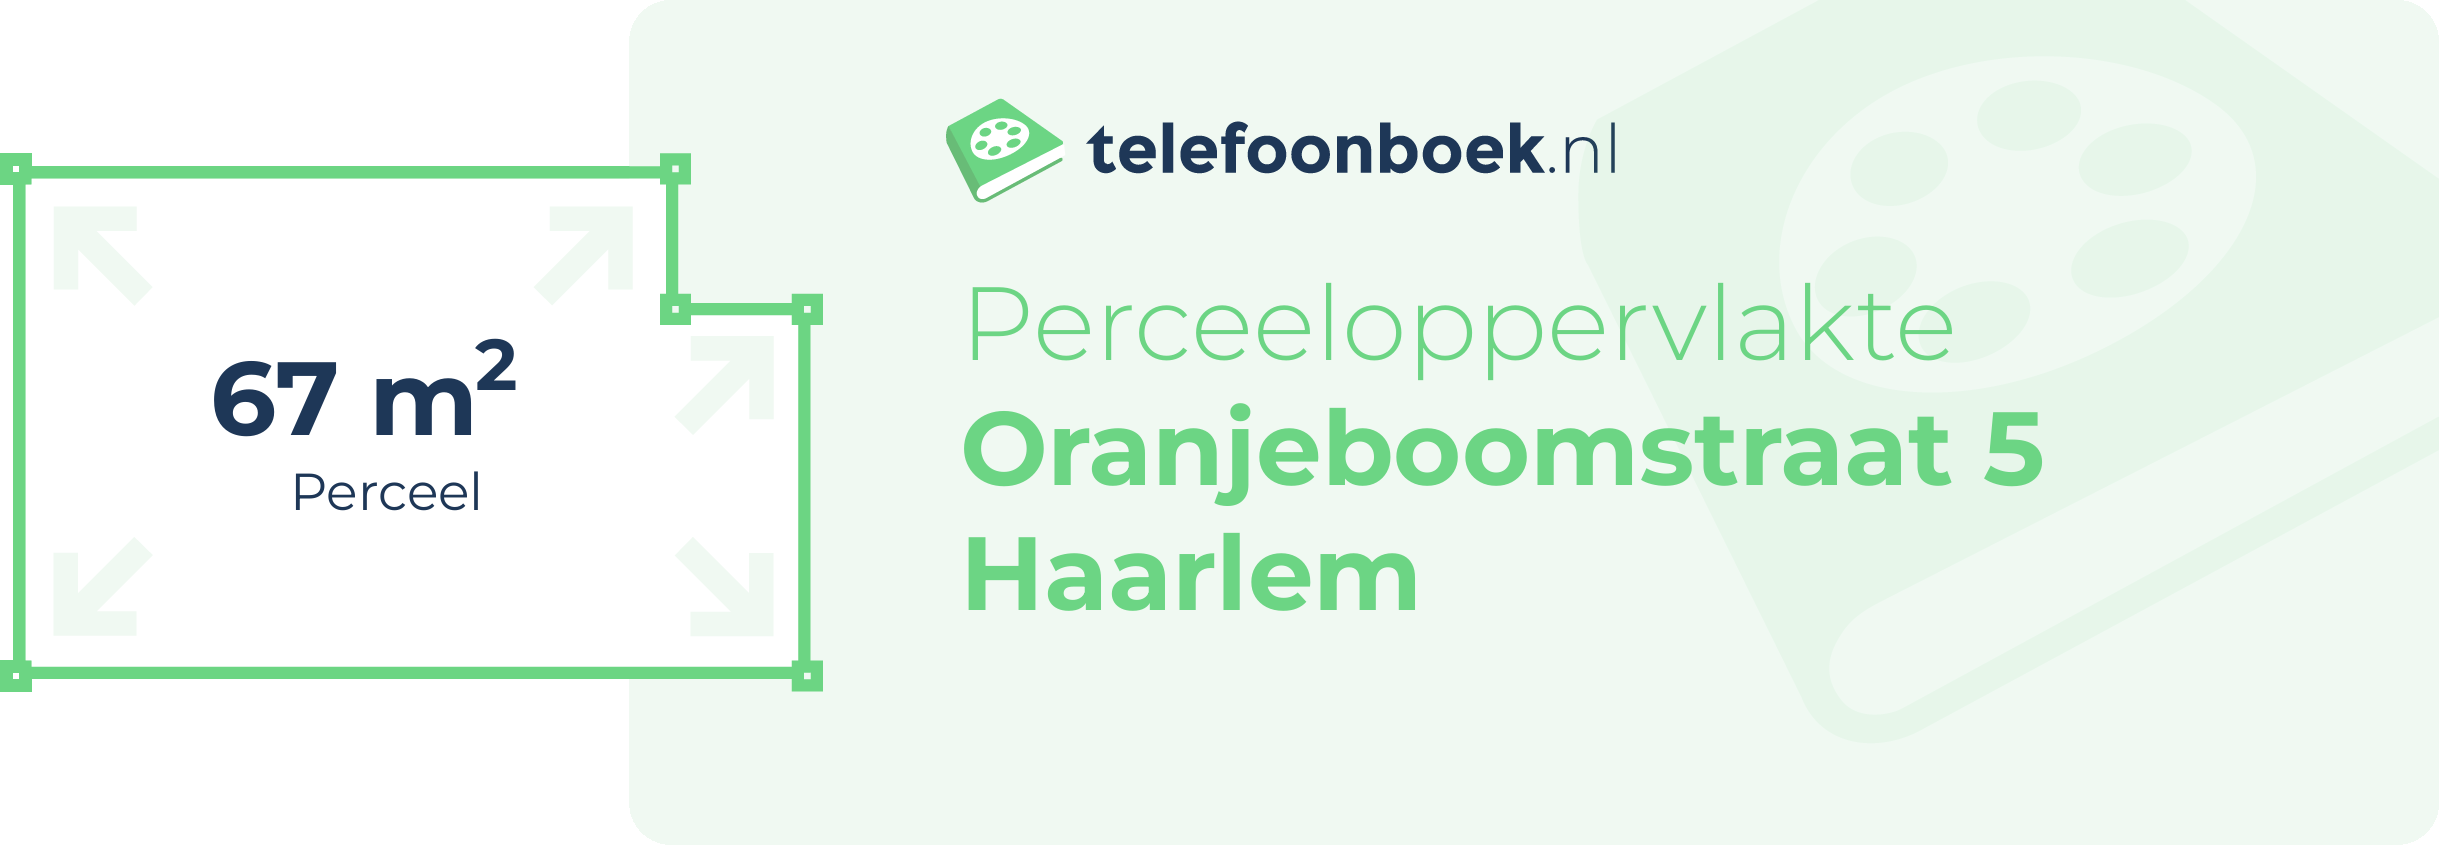 Perceeloppervlakte Oranjeboomstraat 5 Haarlem